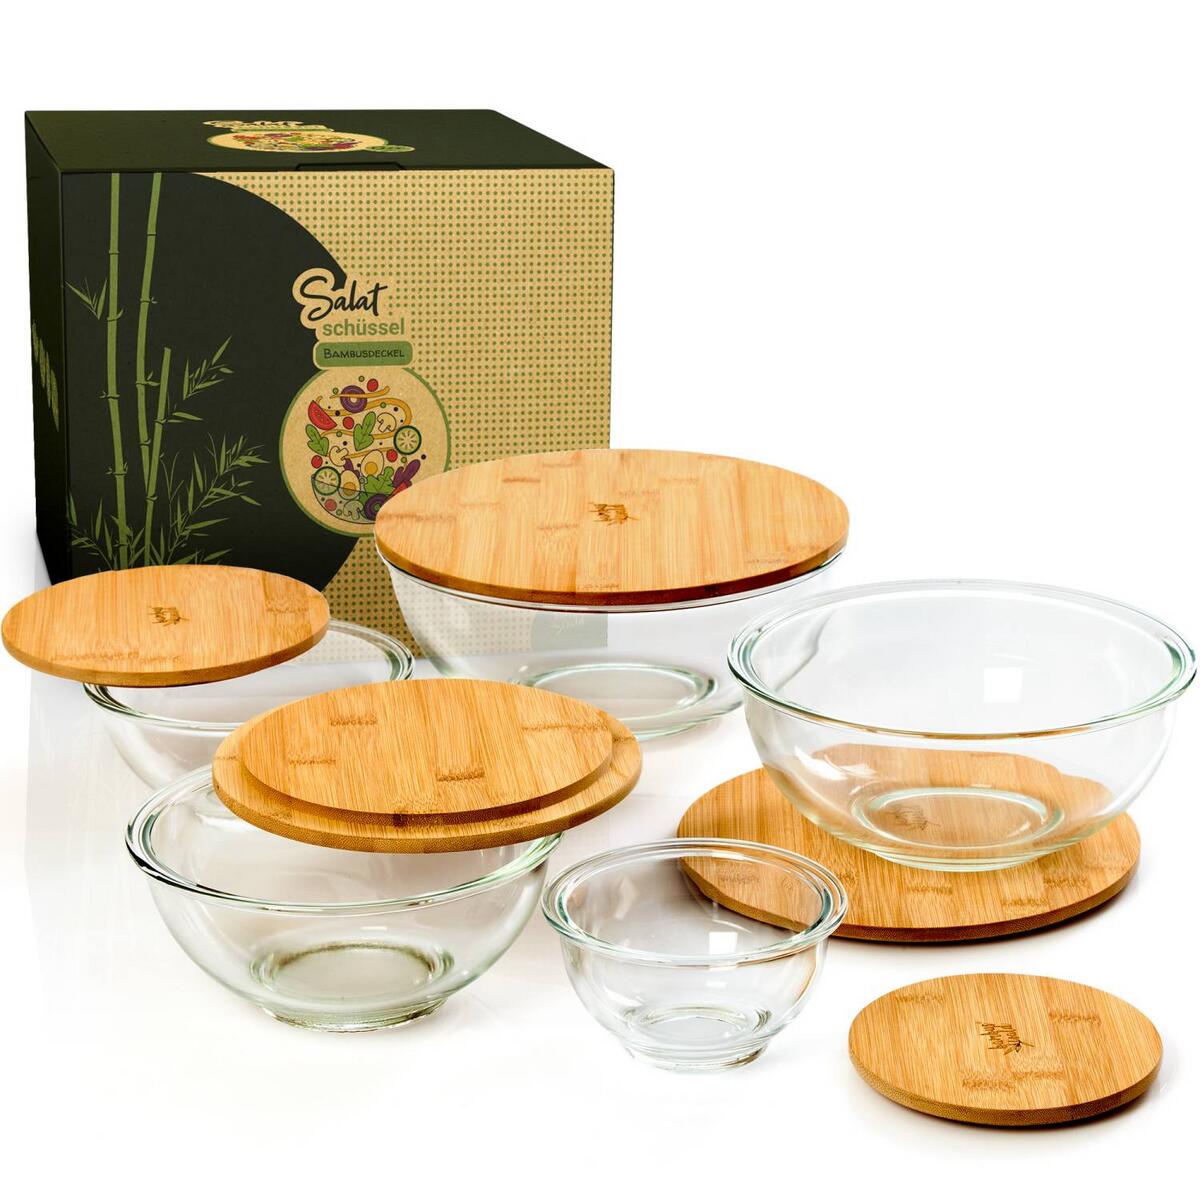 Bambuswald - Salatschüssel in Deckel Glas 5 Größen | Bambus aus Avocadostore aus mit